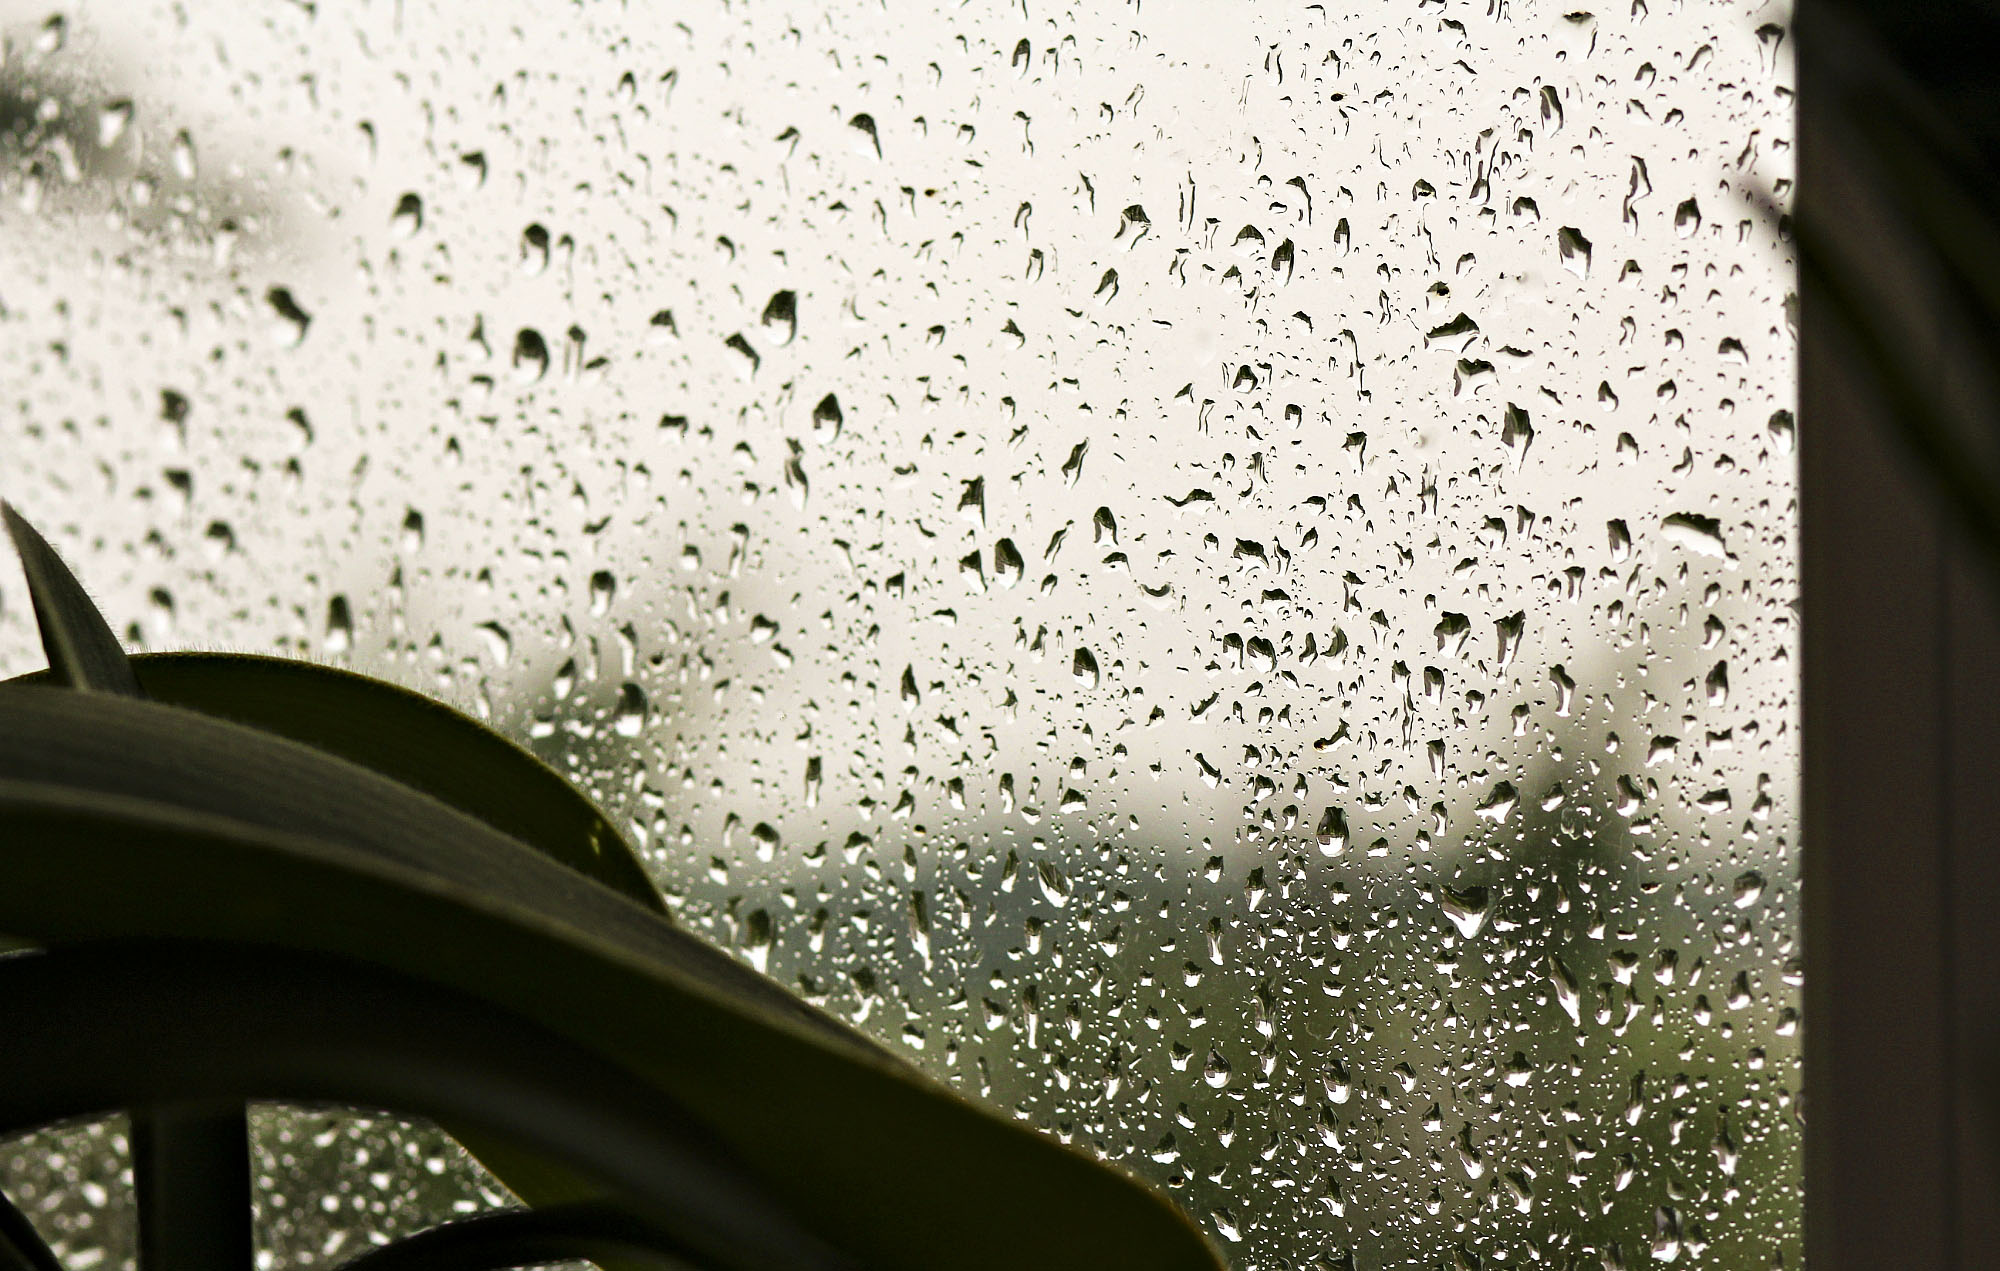 Дождик ласково. Нежный дождь. Слезинки дождя. Дождь на стекле рисунок. Дождик ласковый нежный и тонкий.